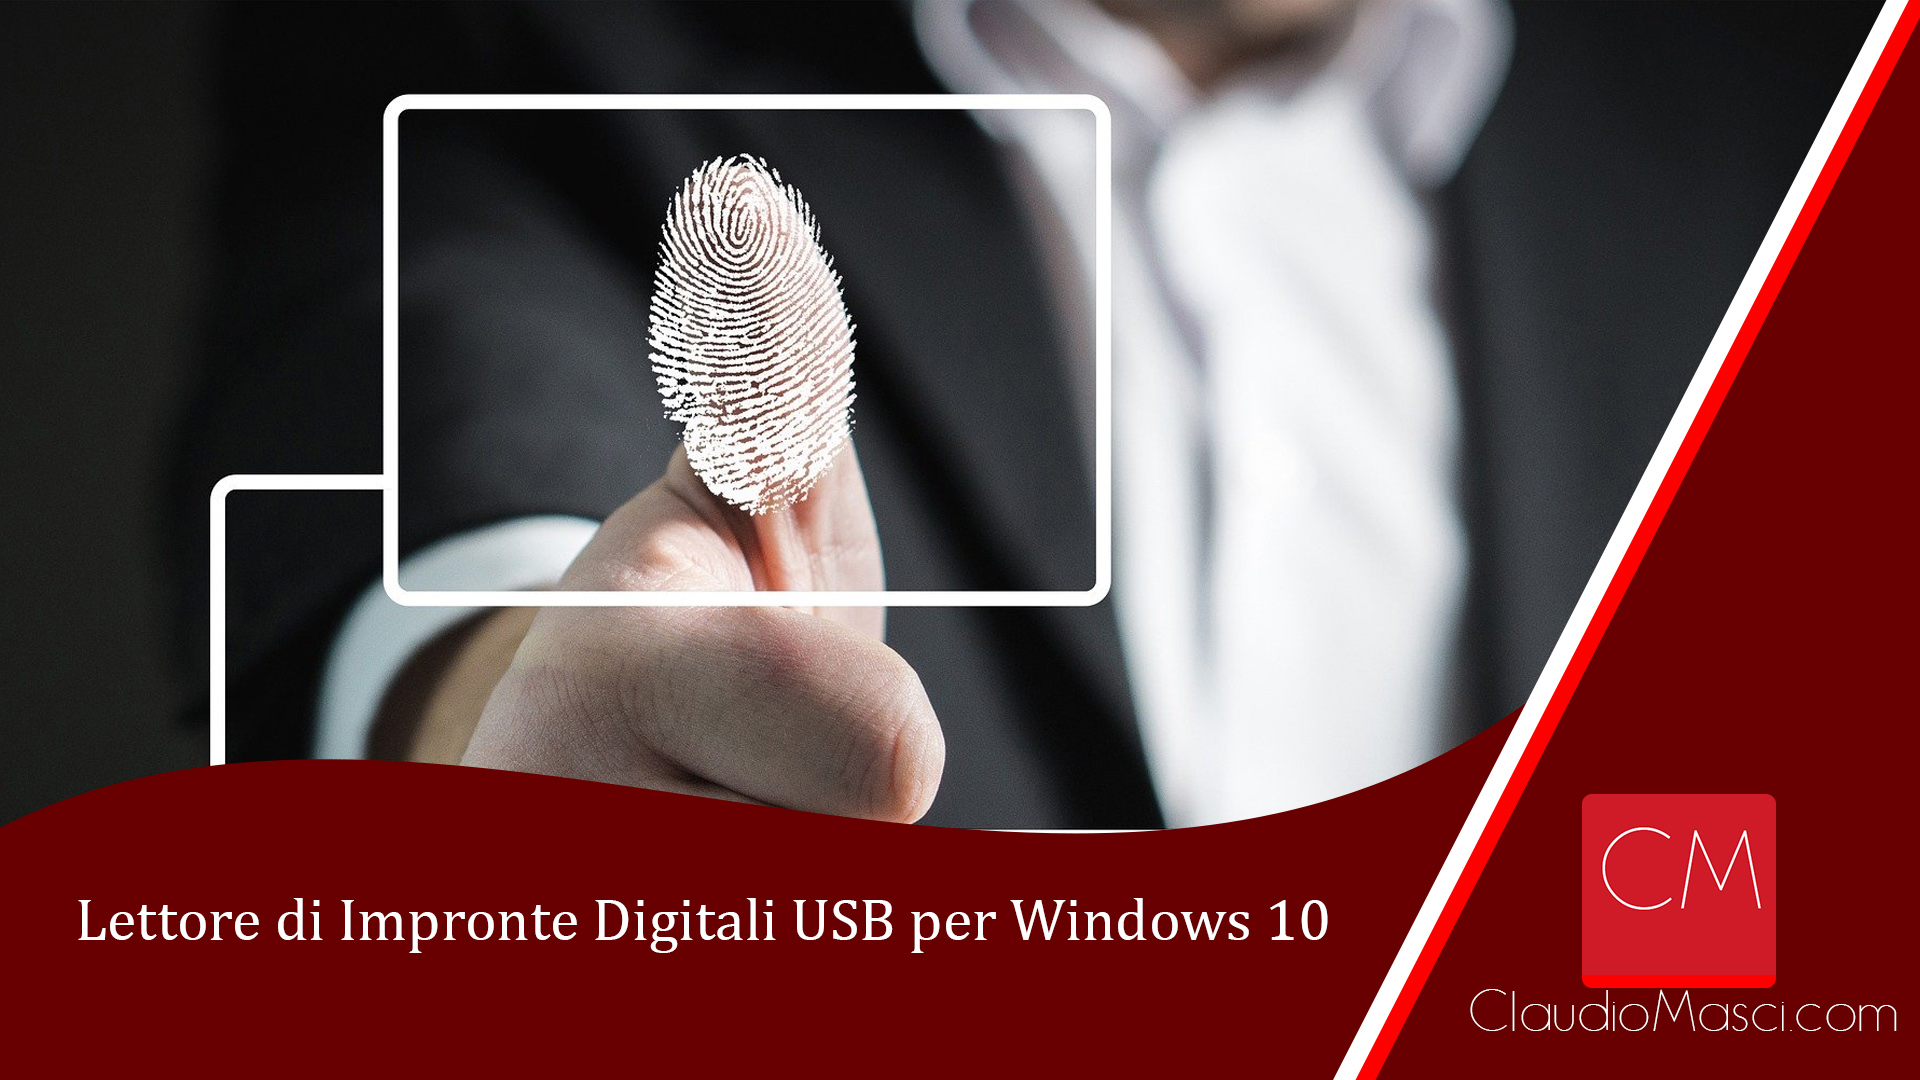 Lettore di Impronte Digitali USB per Windows 10